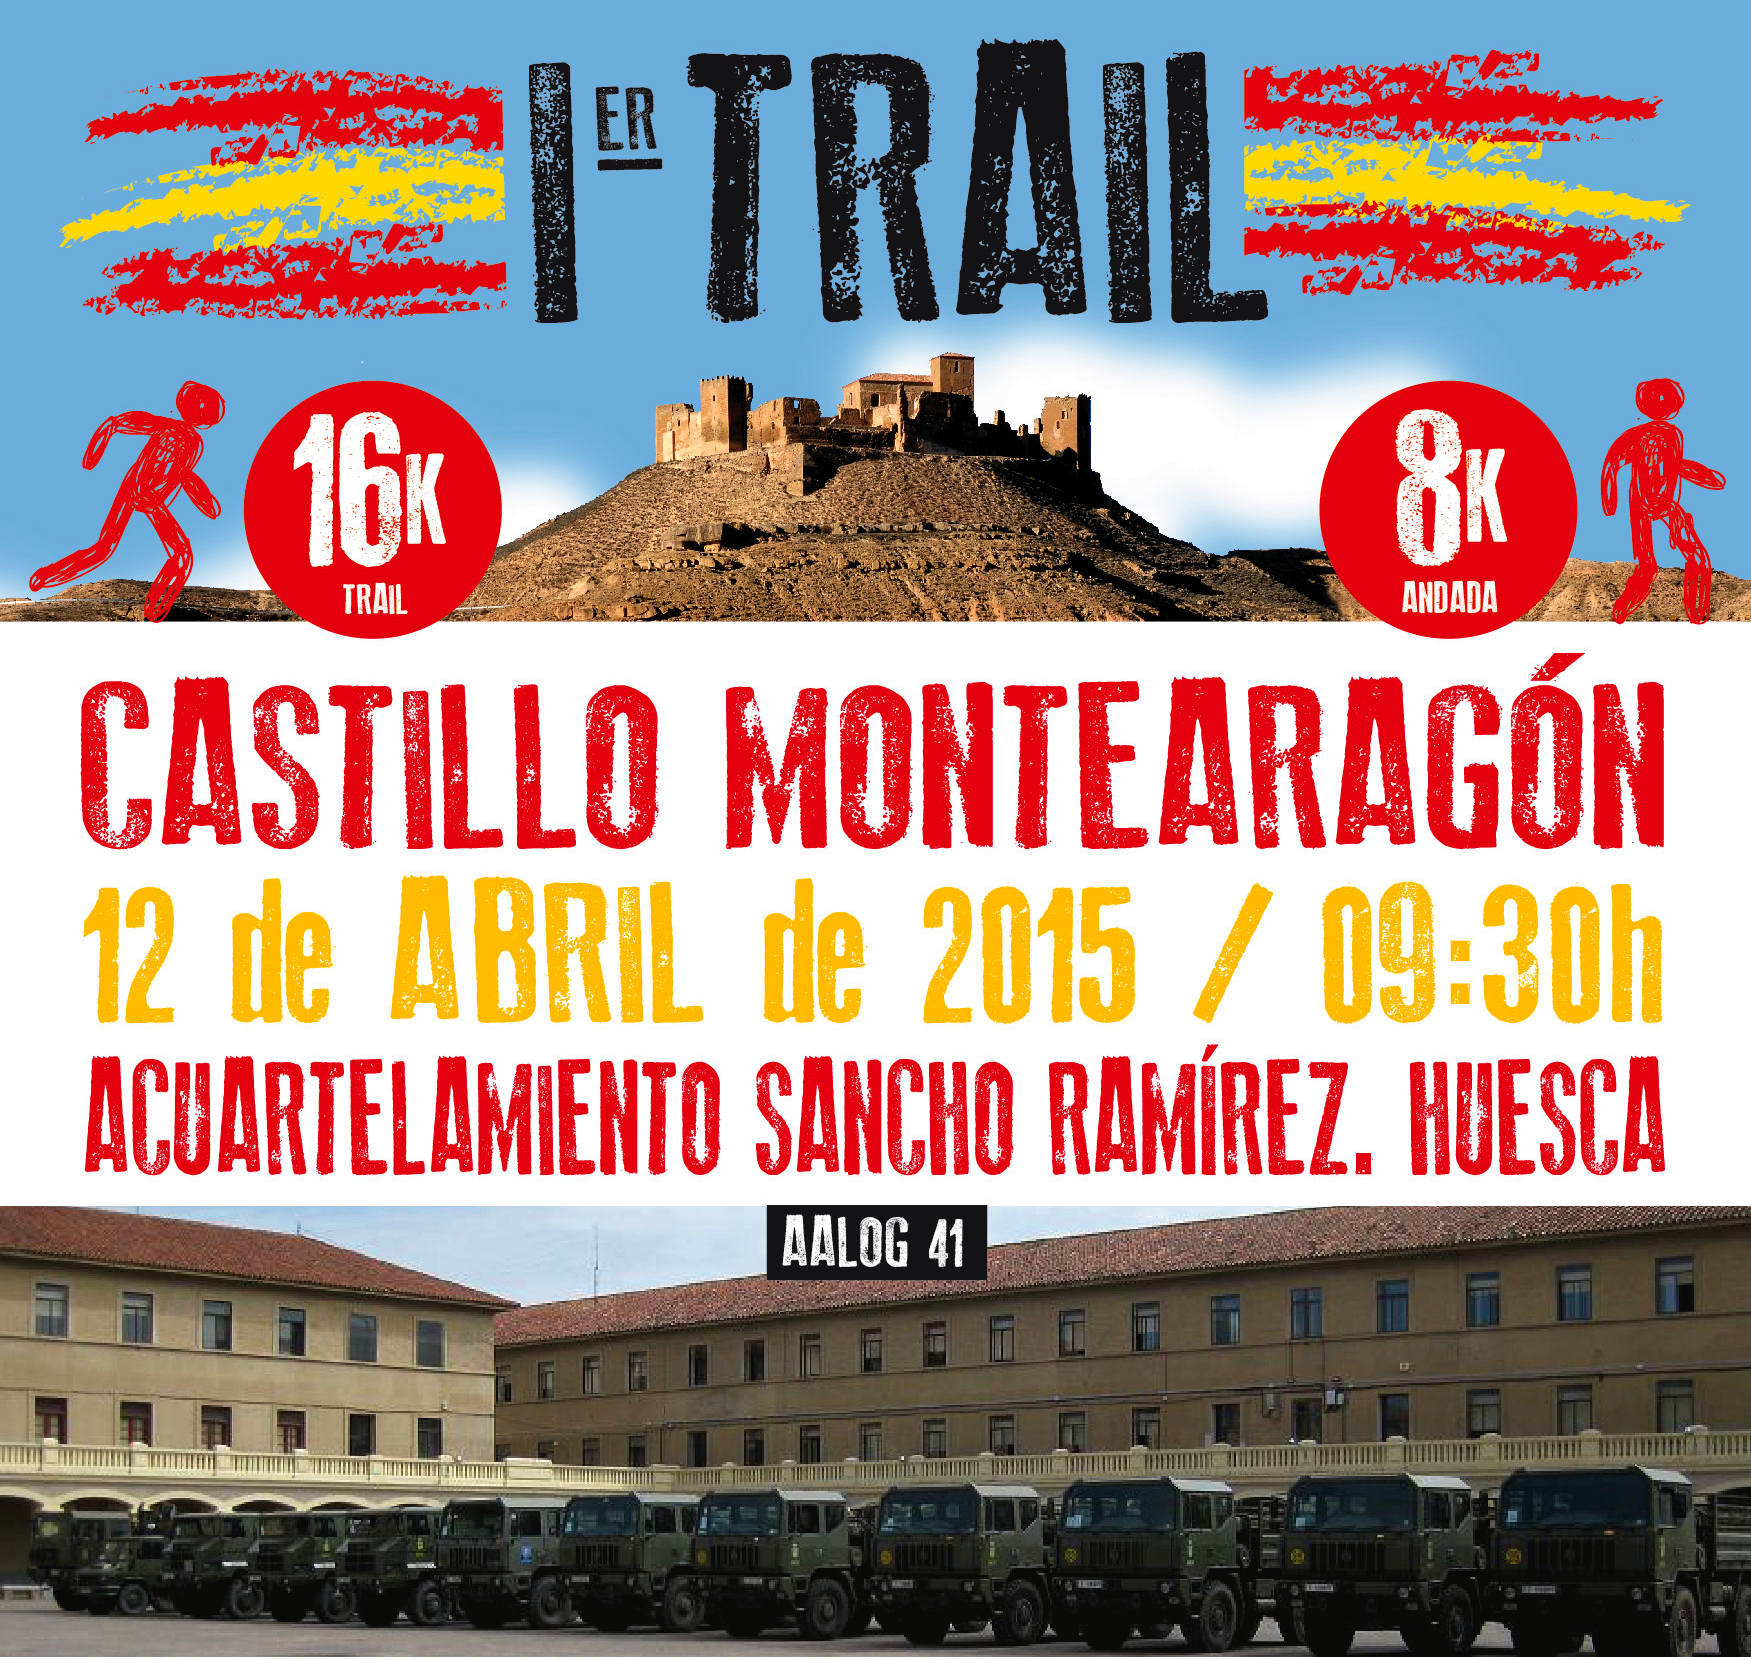 Trail Castillo Montearagón